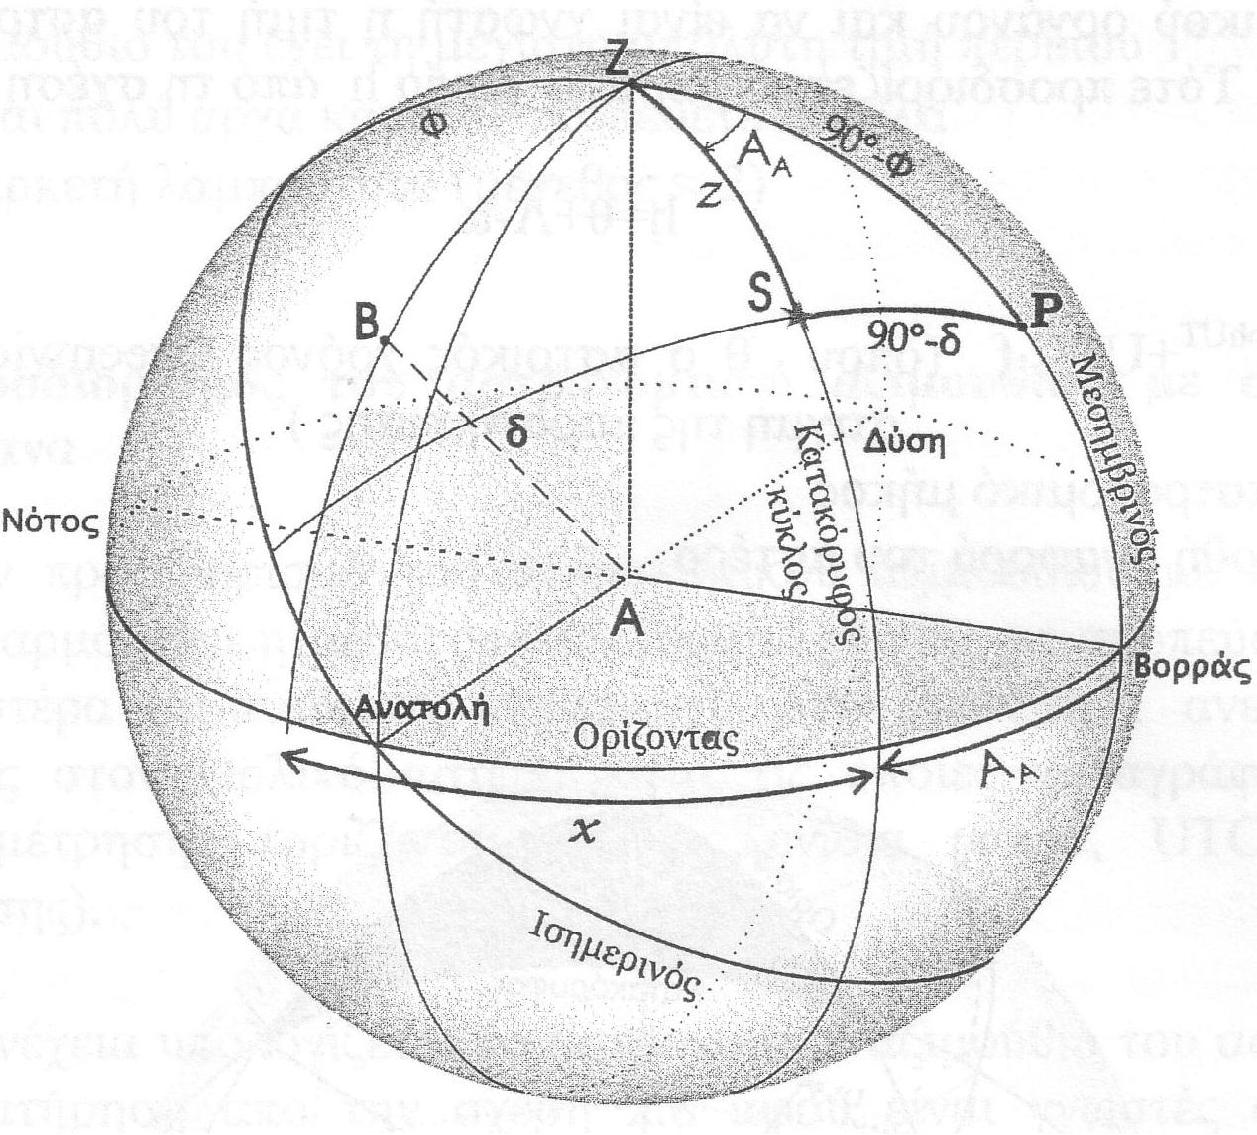 κατακόρυφου κύκλου του Β και του κατακόρυφου κύκλου ενός αστέρα S κάποια χρονική στιγμή, και την ίδια χρονική στιγμή να προσδιορισθεί το αζιμούθιο Α Α του αστέρα (σχήμα 2.3).